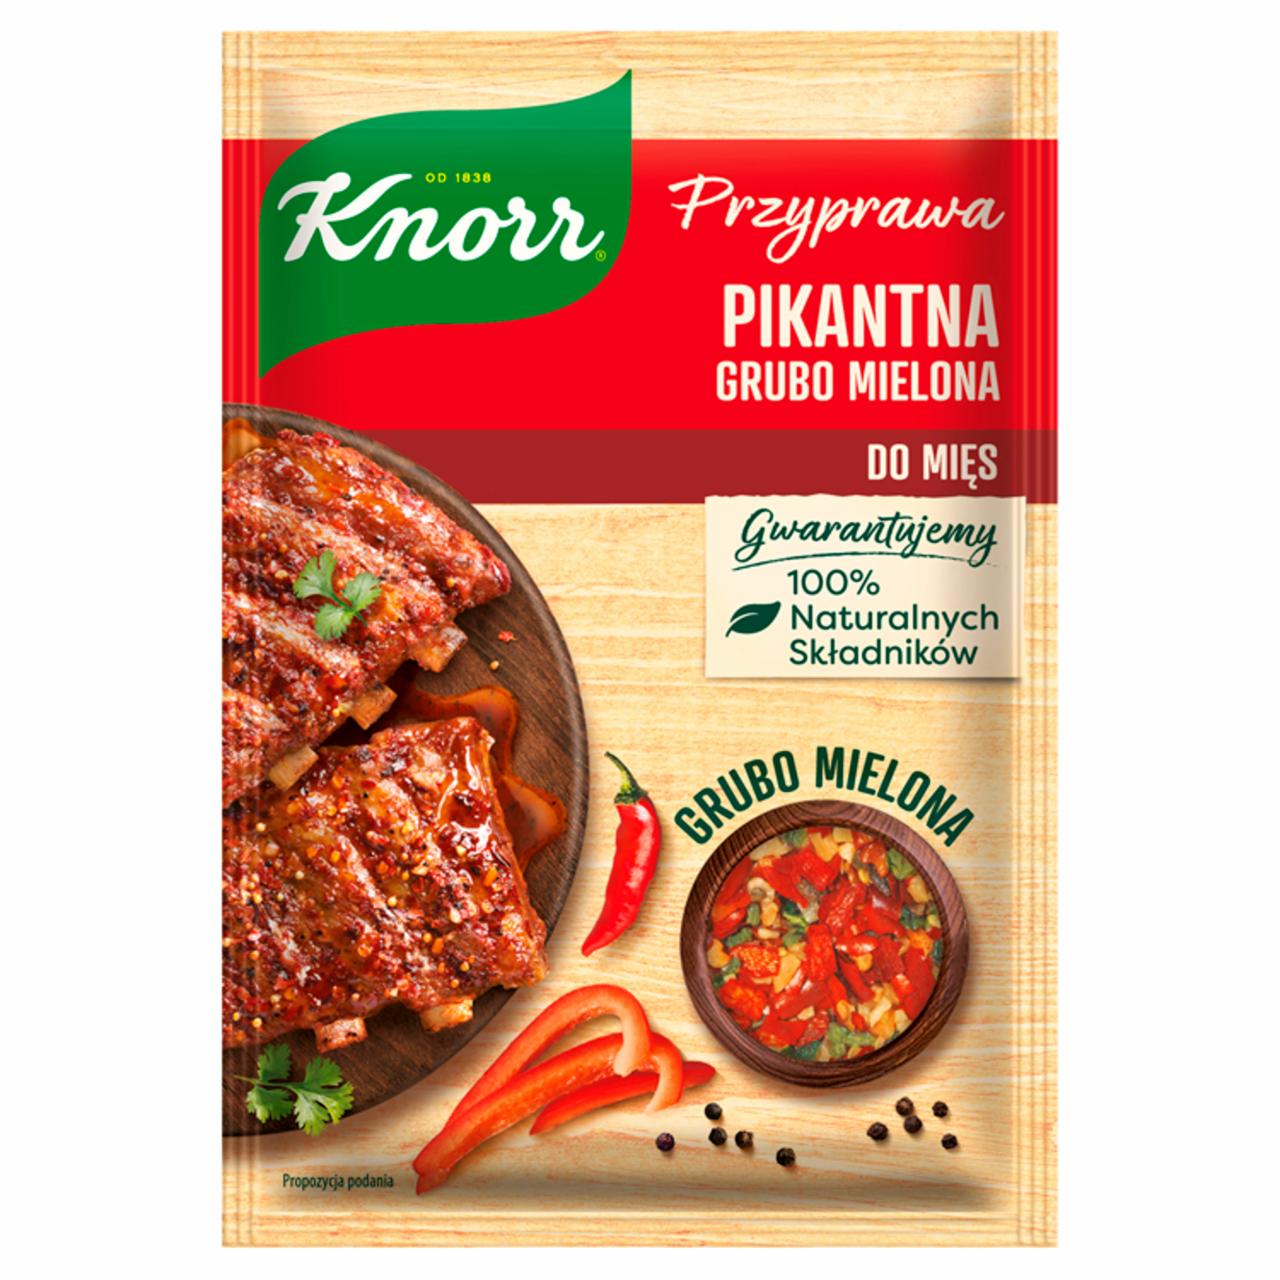 Zdjęcia - Knorr Przyprawa pikantna grubo mielona 20 g